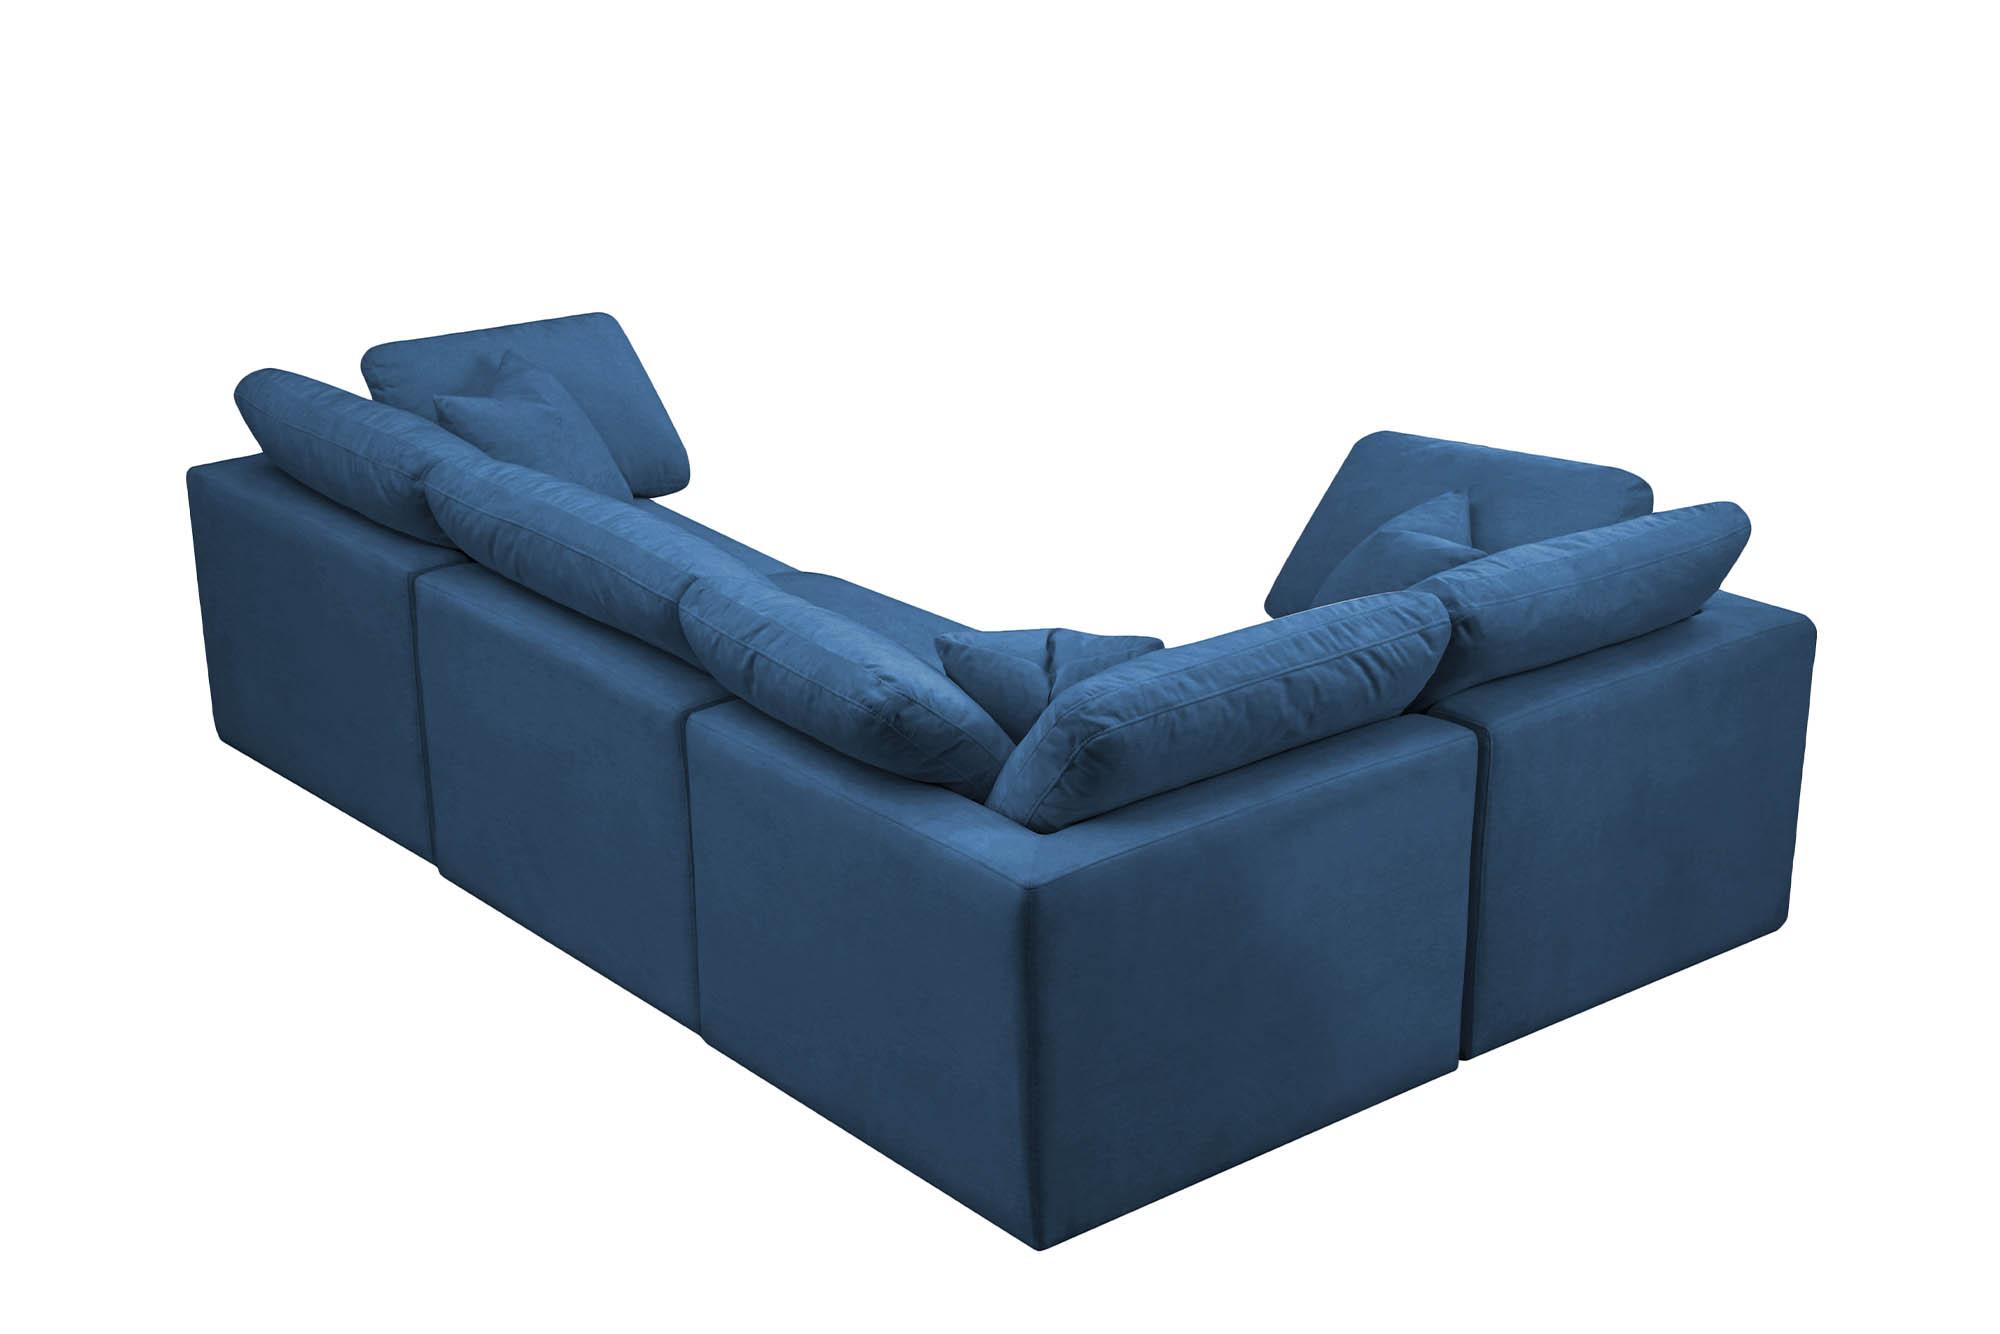 

    
Meridian Furniture 602Navy-Sec4C Modular Sectional Sofa Navy 602Navy-Sec4C
